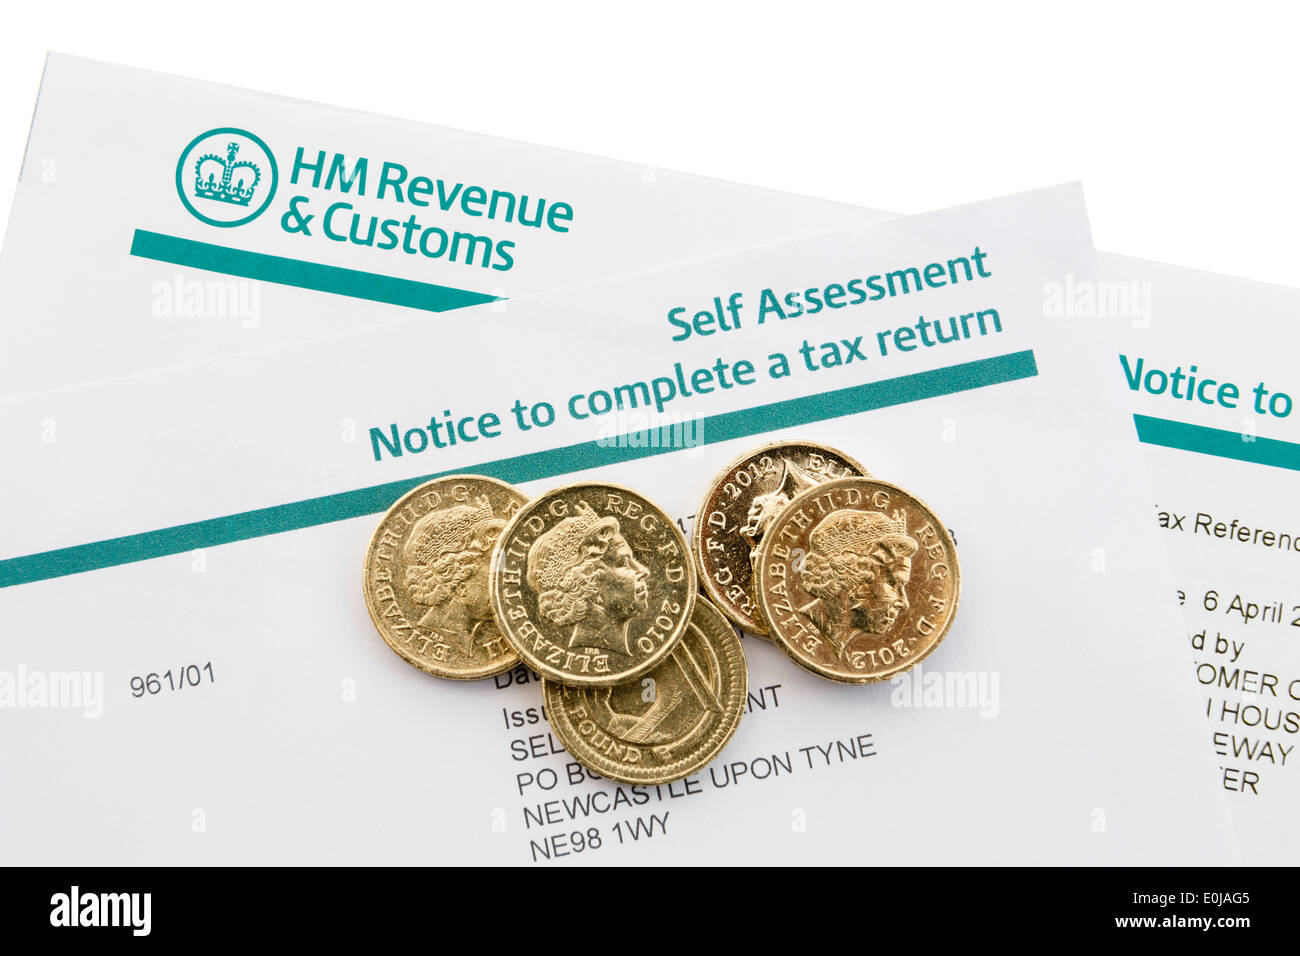 UK HM Revenue & Customs Avis d'auto-évaluation pour produire une déclaration de revenus avec quelques pièces livre sur blanc. Angleterre Angleterre Banque D'Images